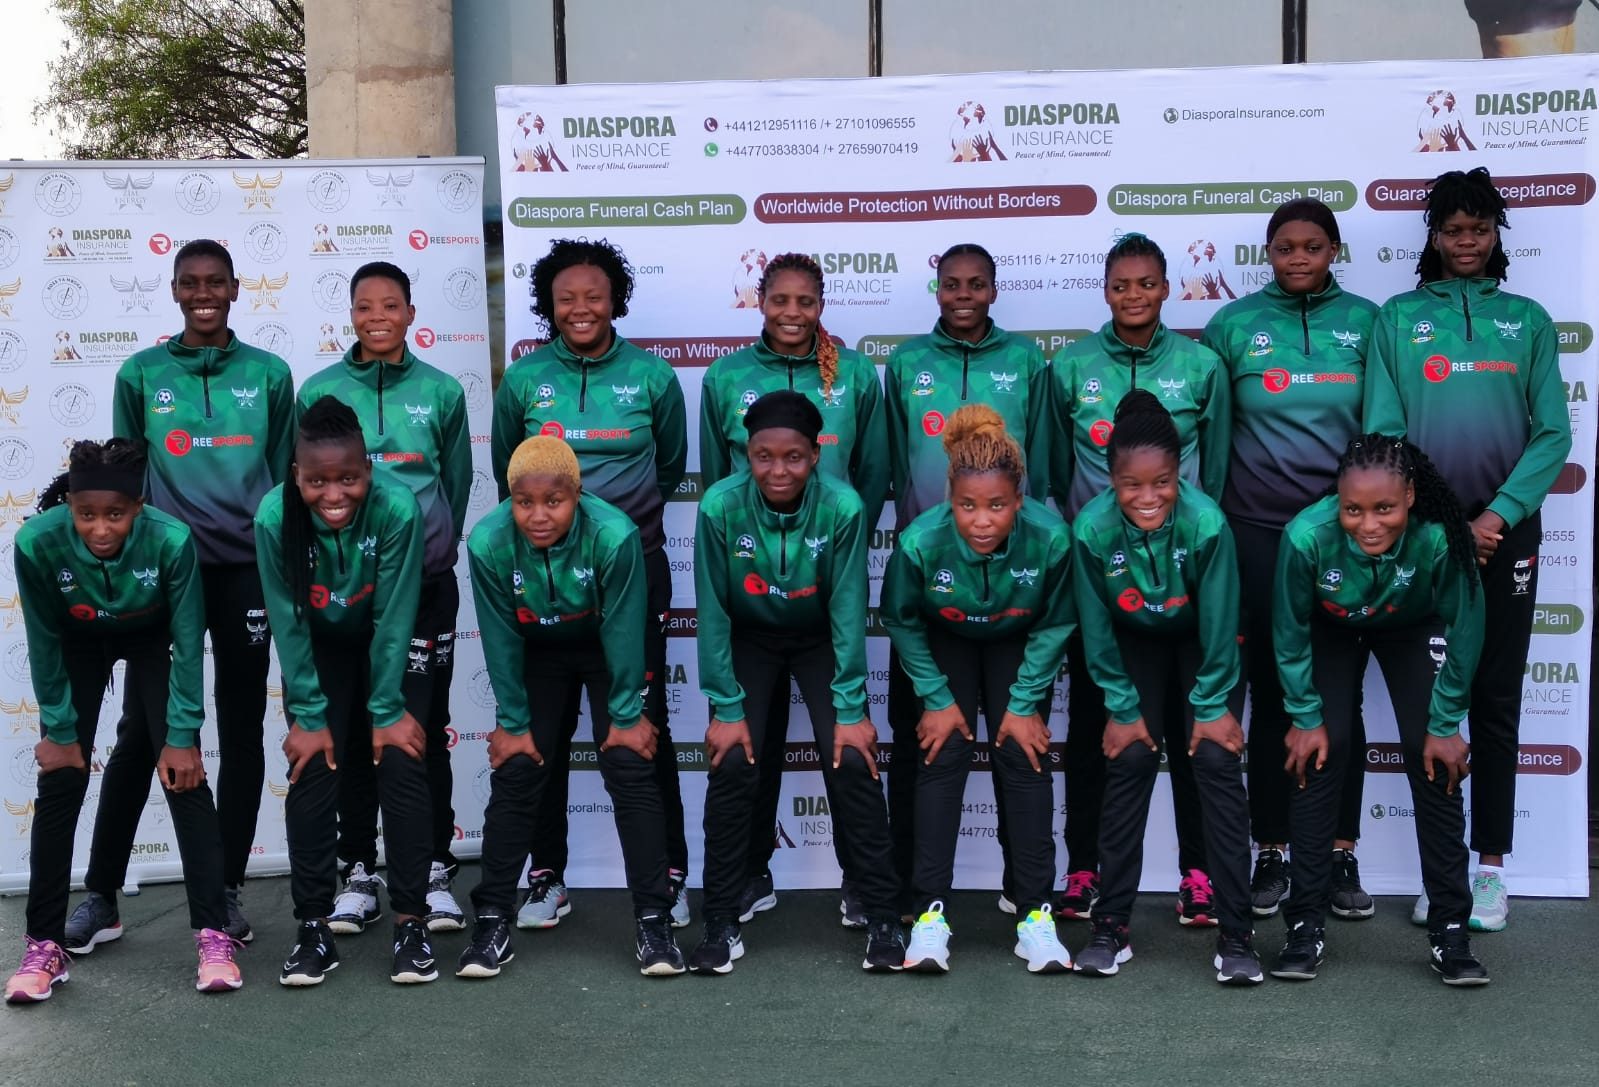 Diaspora Insurance, Reesports bring cheer to Zimbabwe Netball team